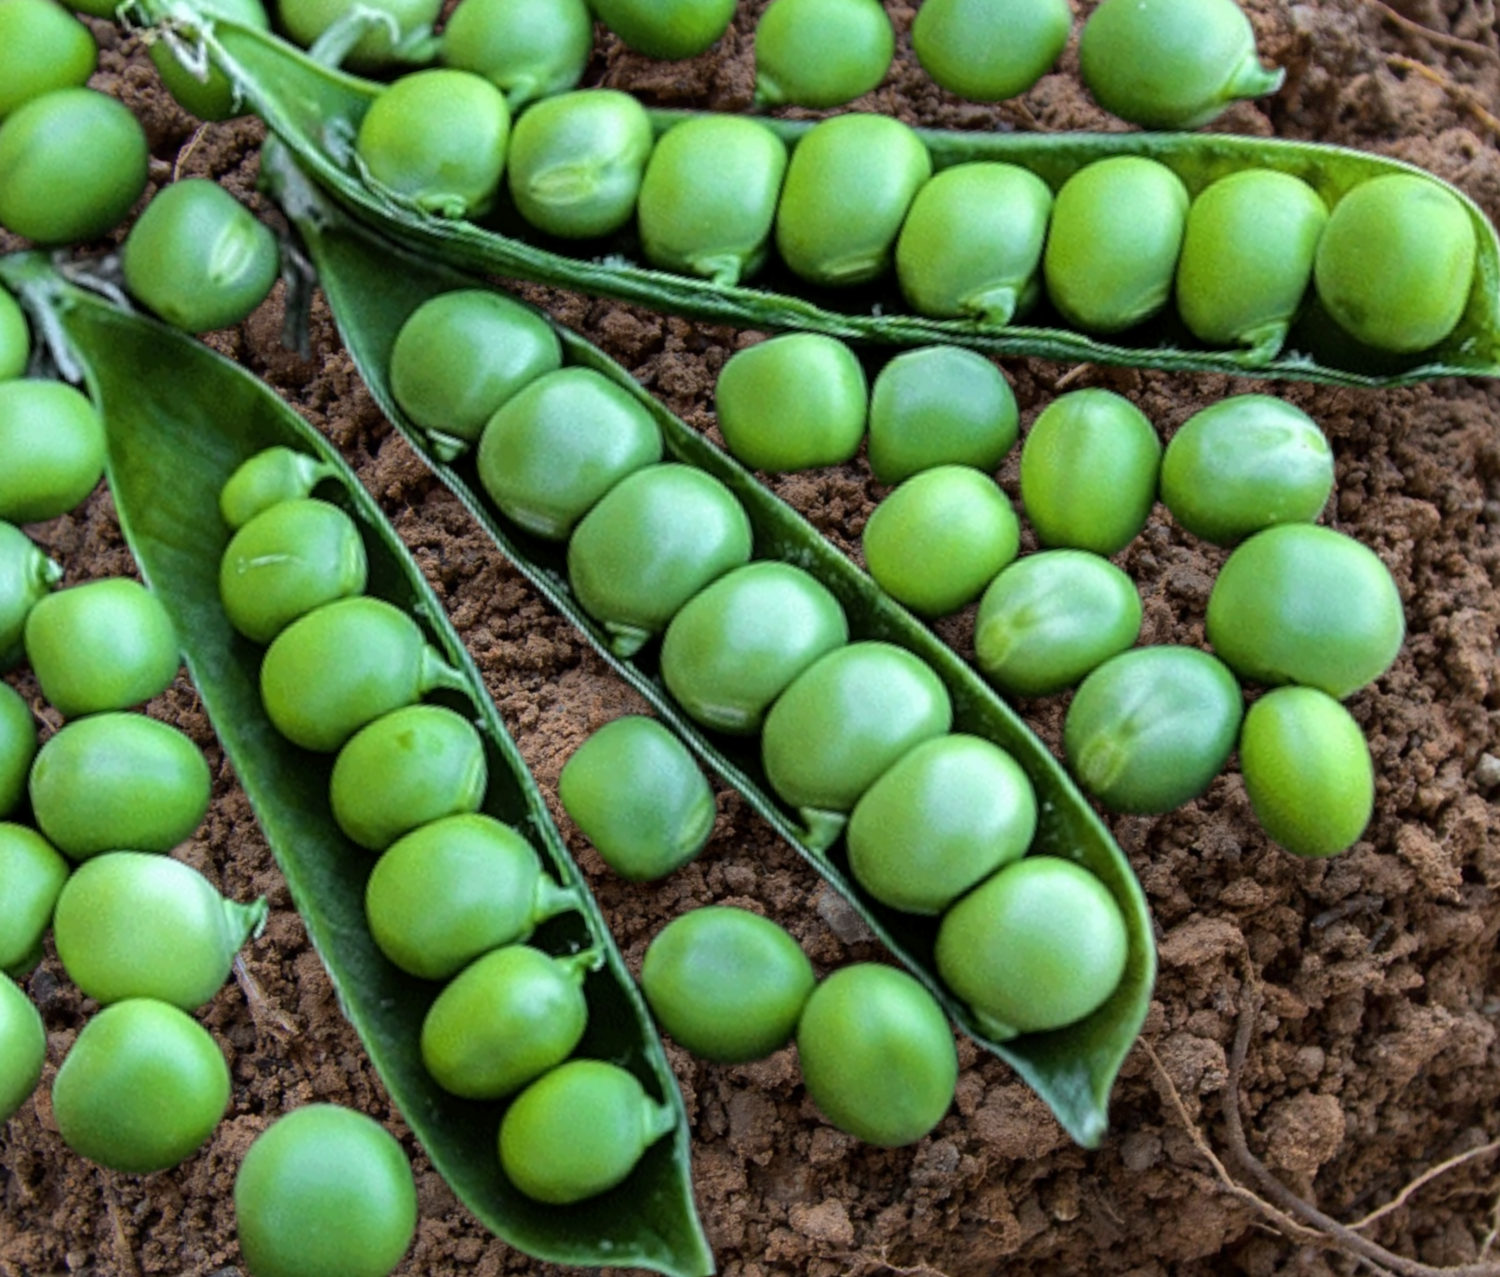 Heirloom Little Marvel Pea Seeds